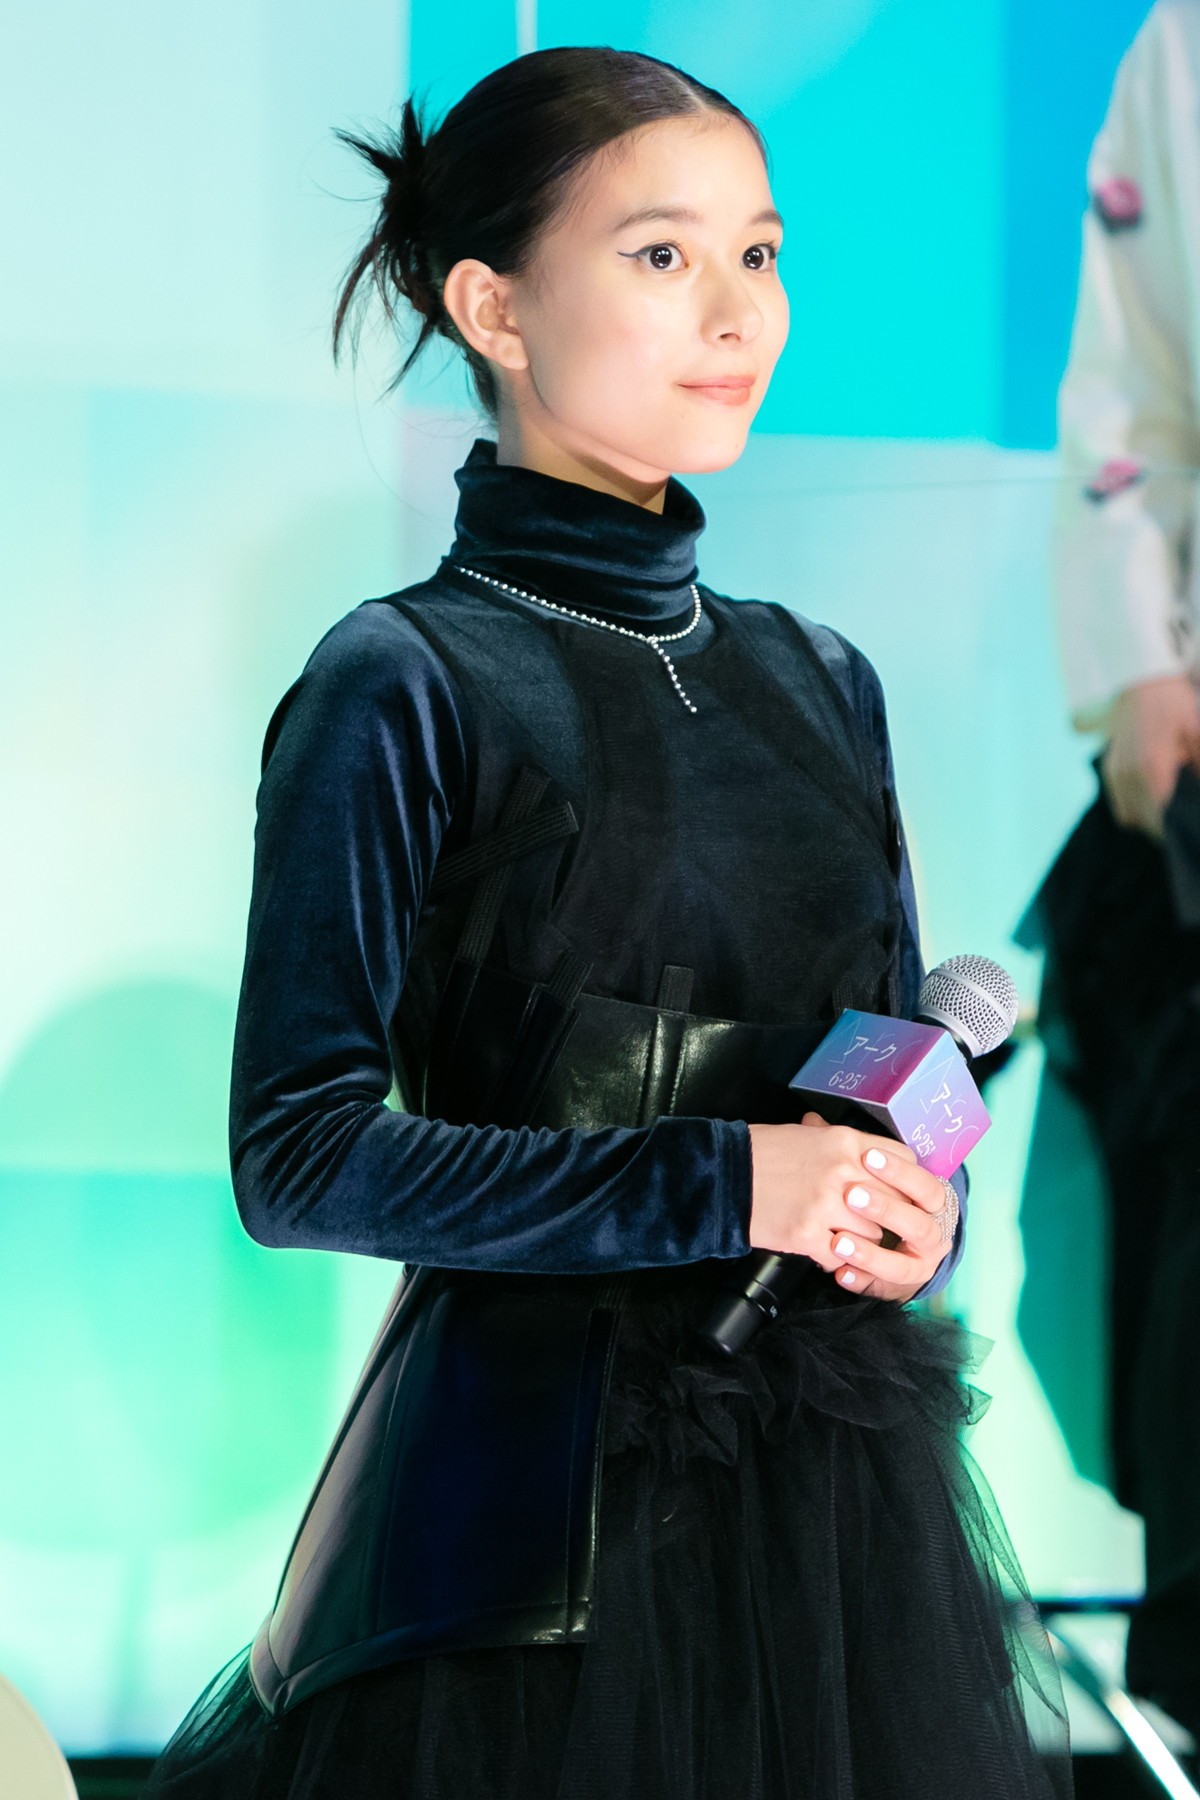 岡田将生、芳根京子と久々の共演で“キスシーン”「緊張しました」